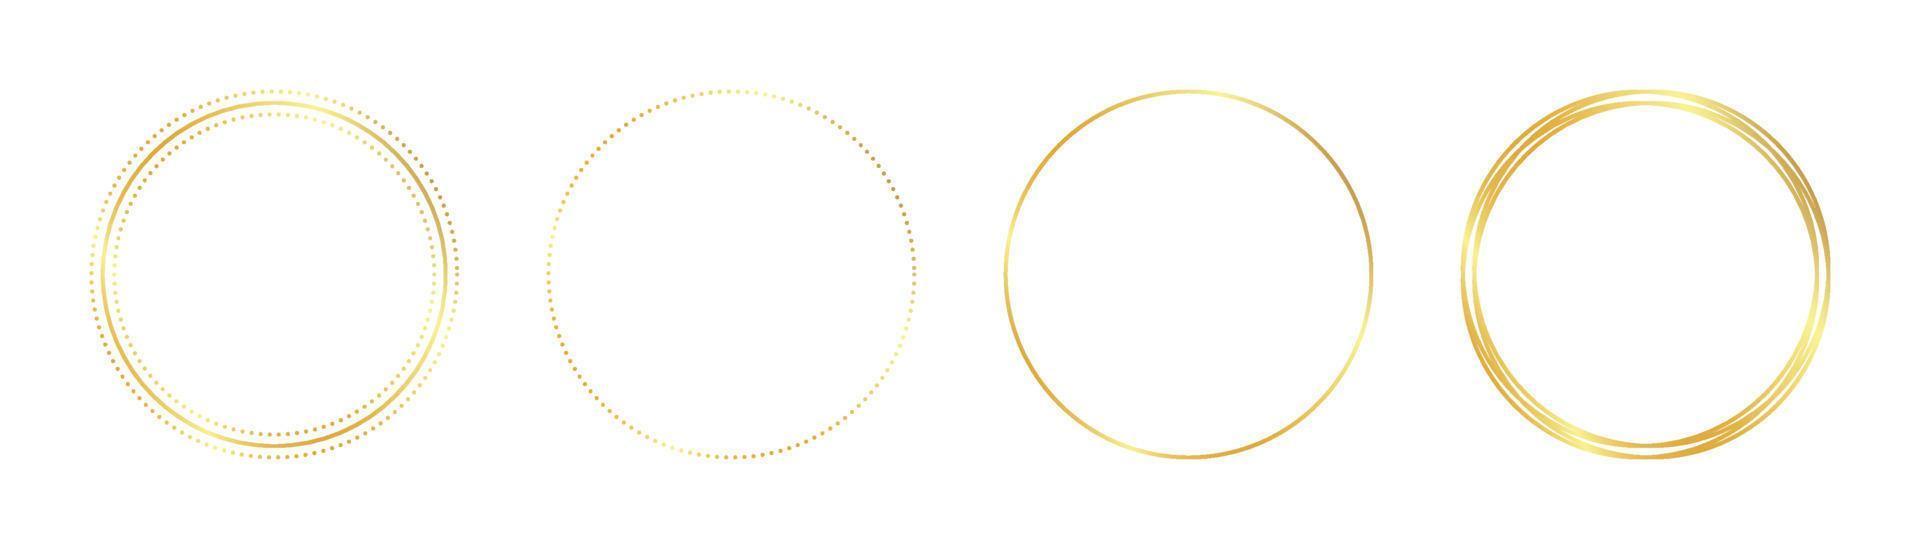 marco dorado circular vector